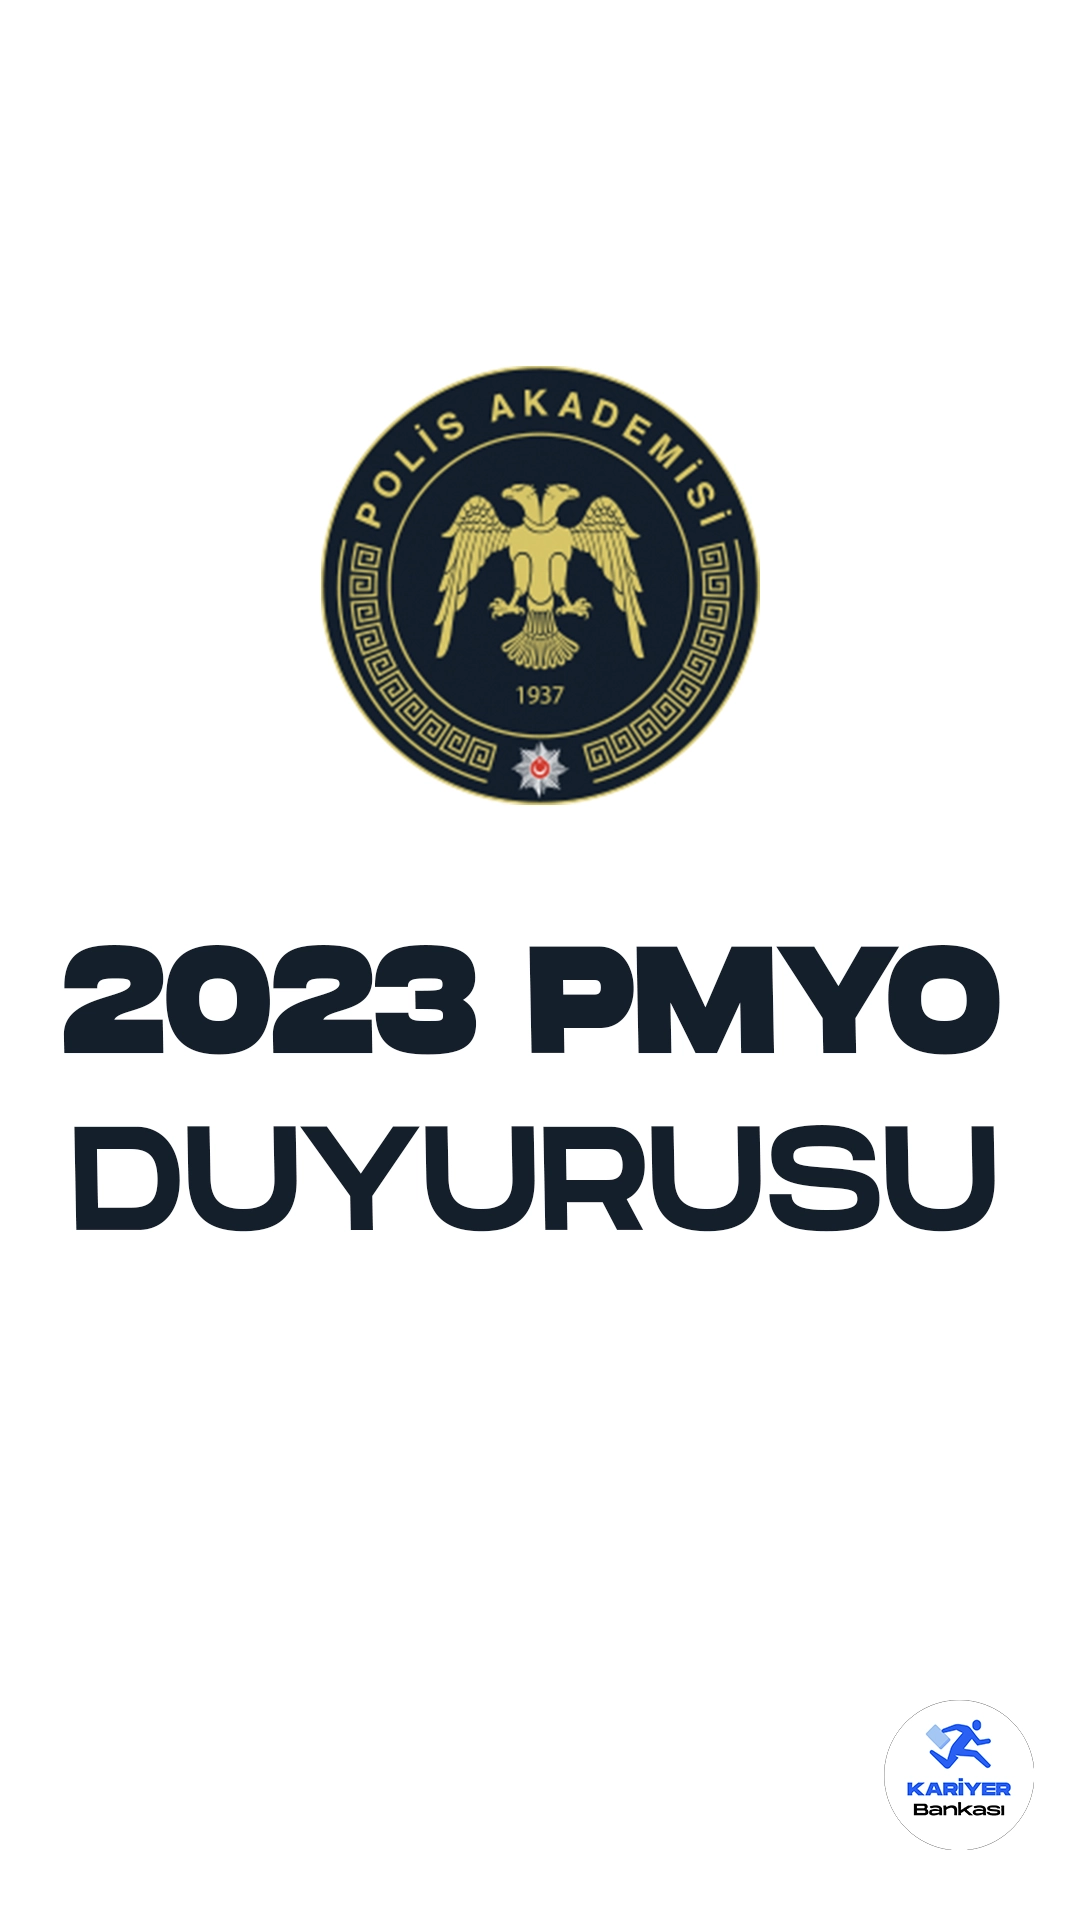 2023 Yılı PMYO Giriş Sınavı Sonuçları Açıklandı. İçişleri Bakanlığı Emniyet Genel Müdürlüğü Polis Akademisi resmi sayfasından yayımlanan duyuruda, 2023 yılı PMYO giriş sınavı sonuçlarının açıklandığı aktarılırdı.